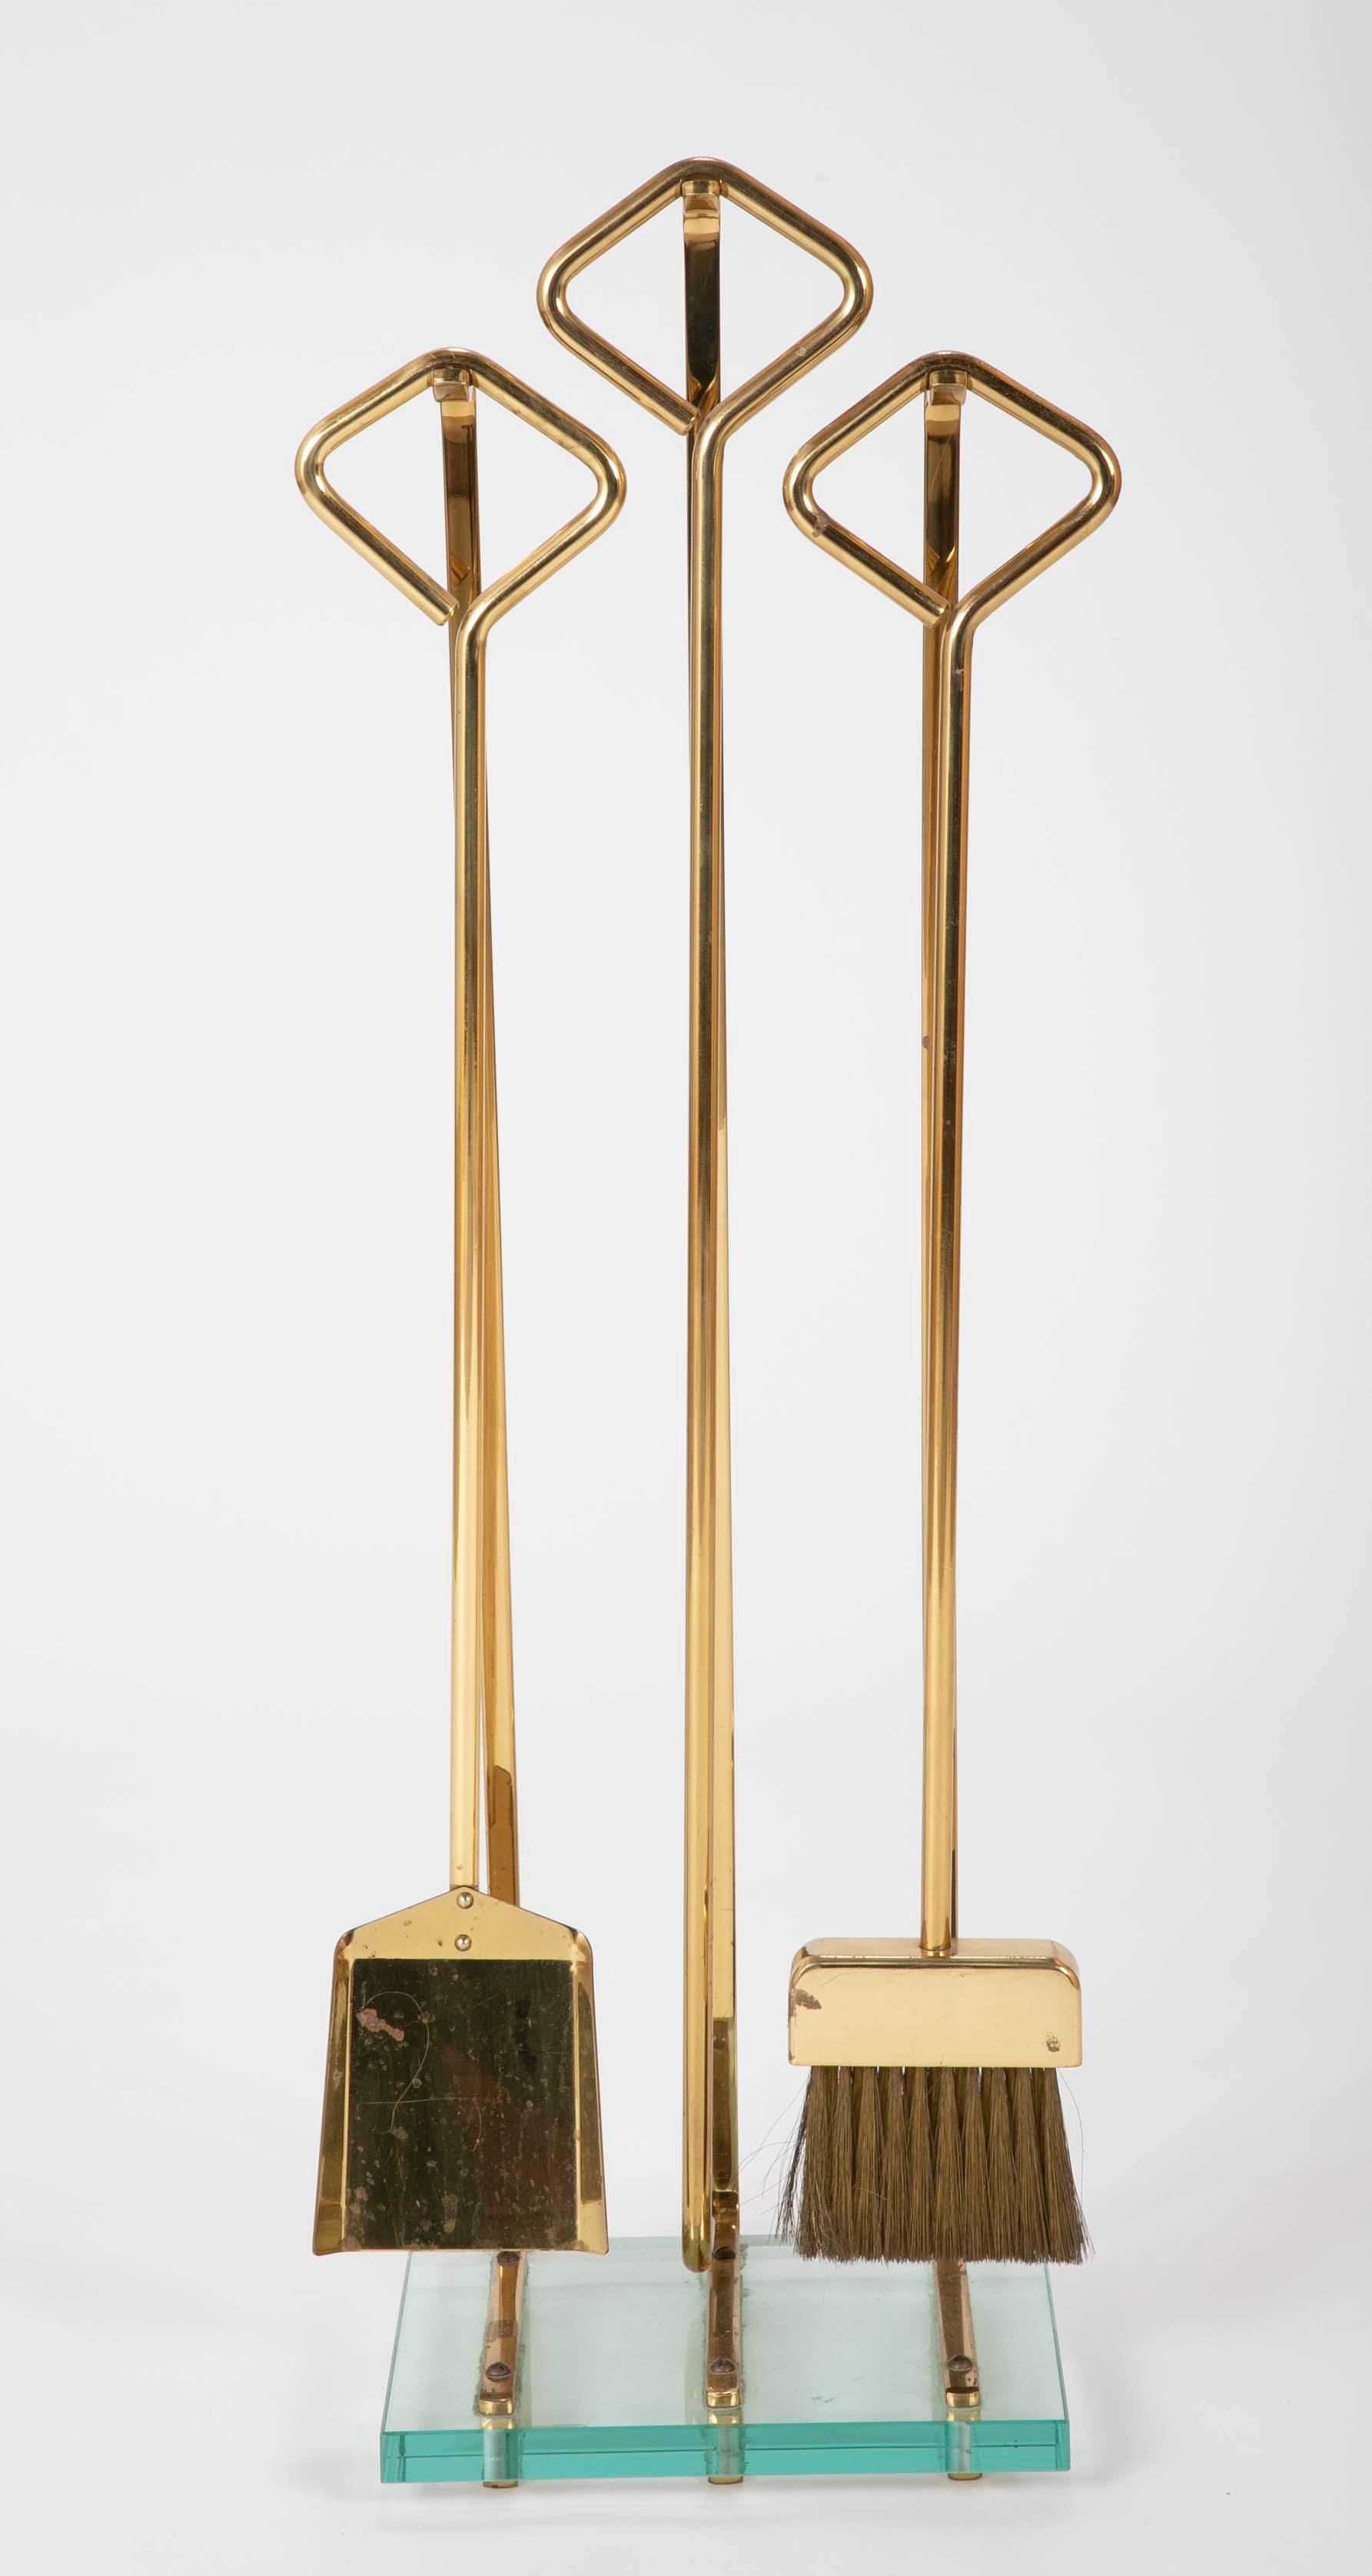 A Set of Fontana Arte Brass & Glass Fire Tools on Stand